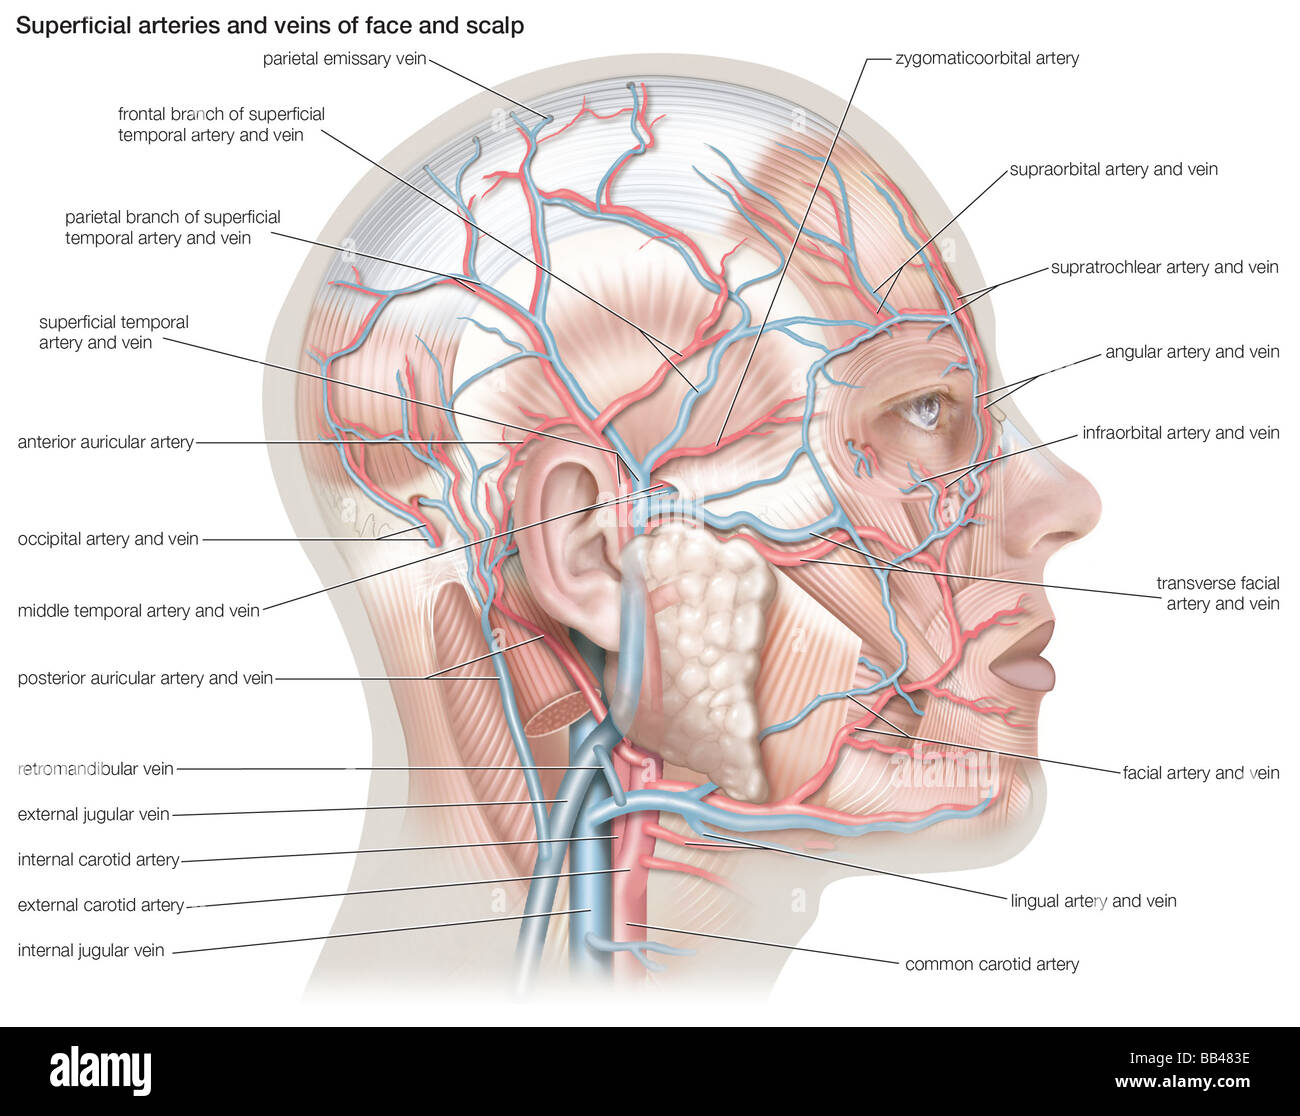 Las arterias y venas superficiales de la cara y cuero cabelludo Fotografía  de stock - Alamy